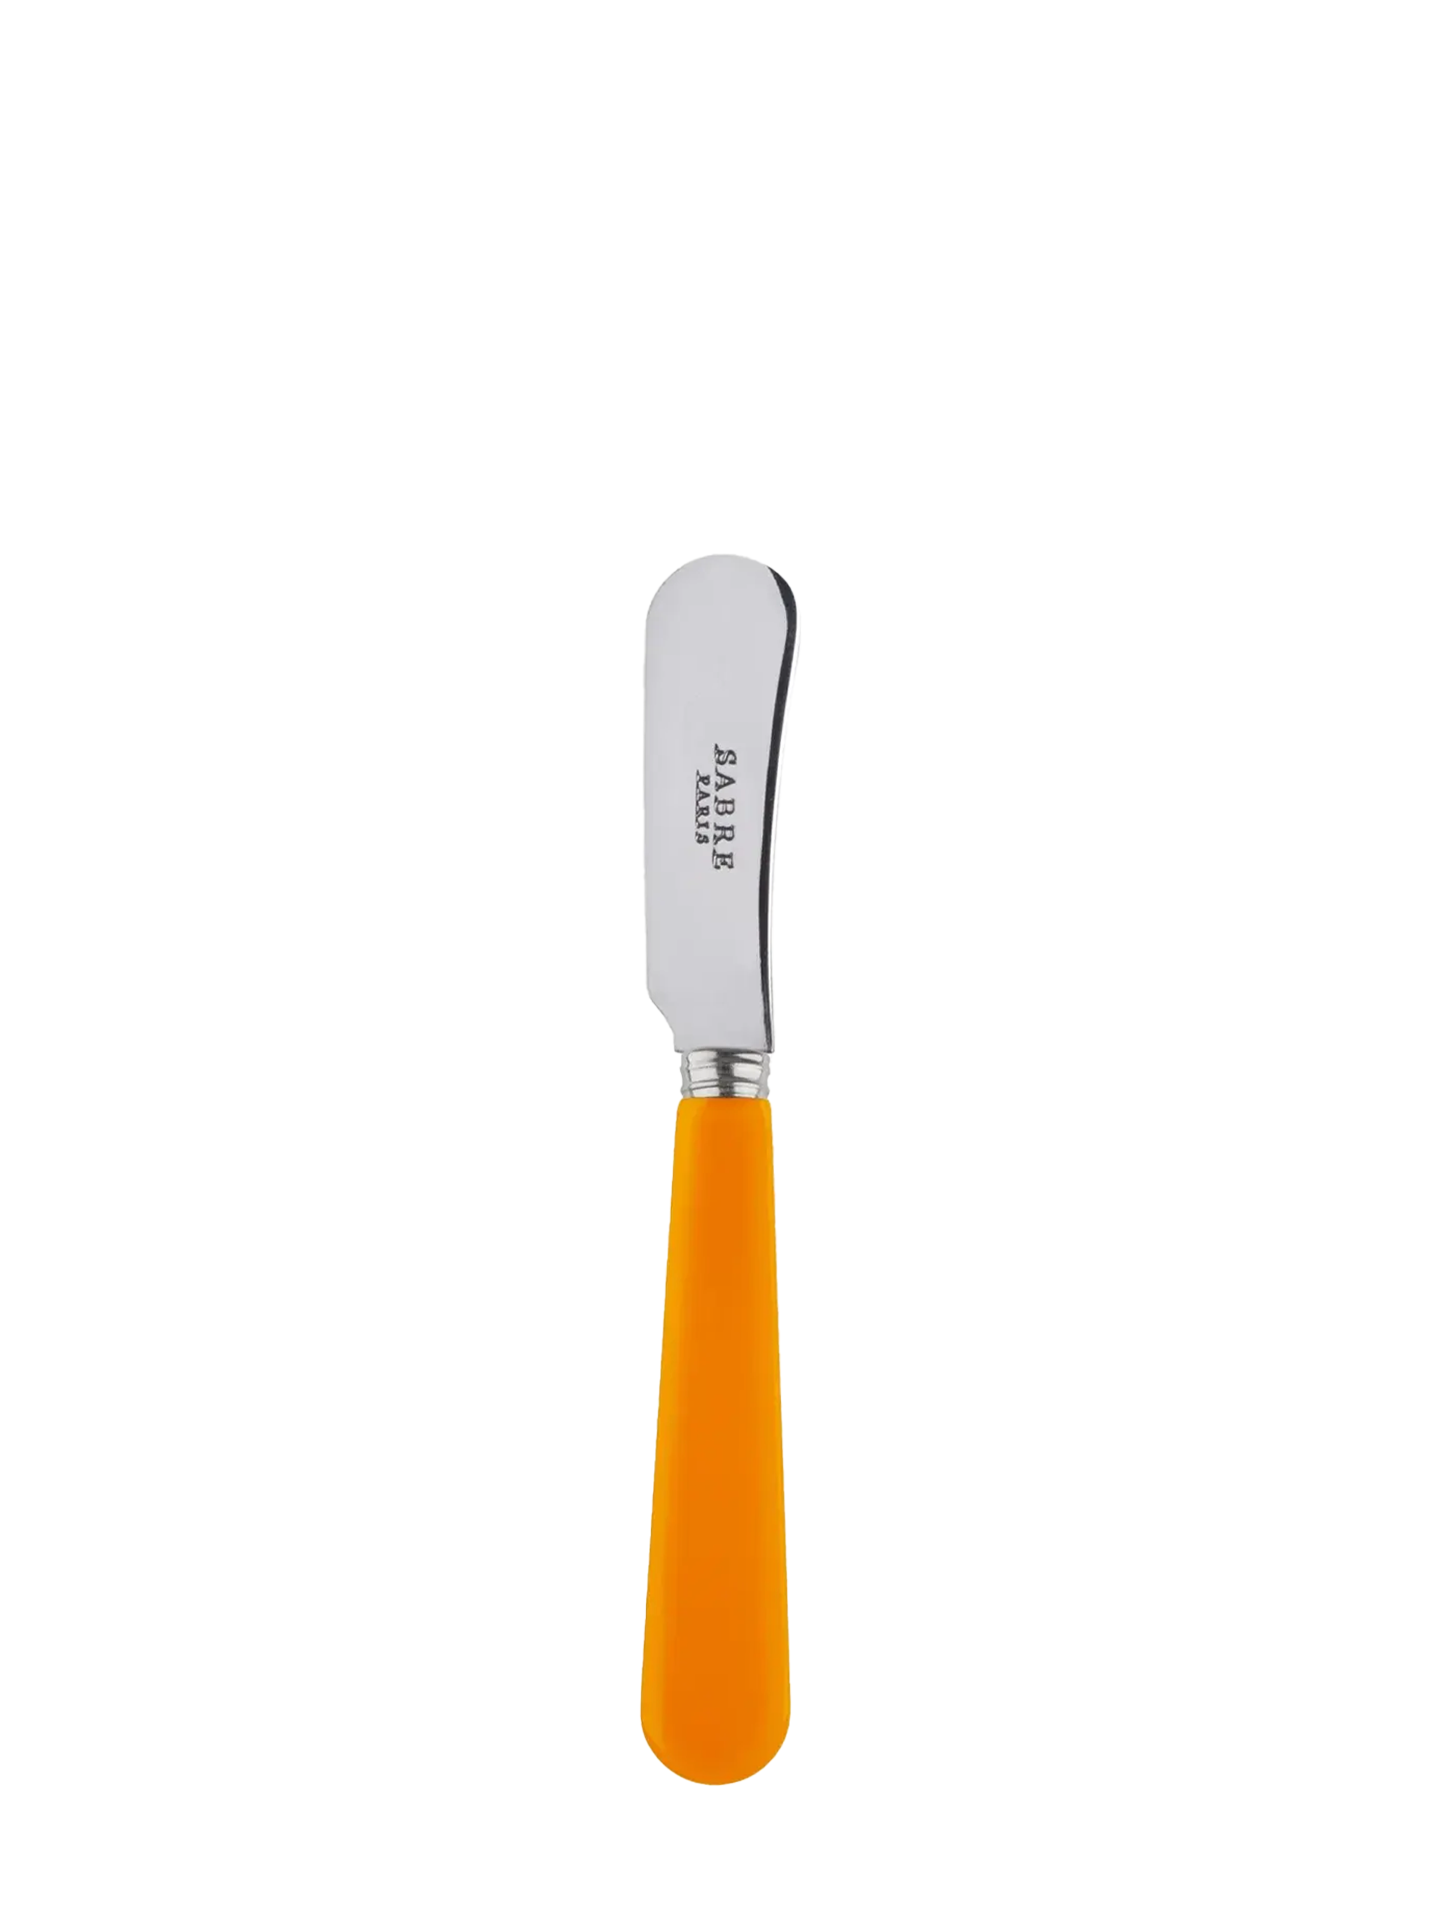 Duo butter knife, orange